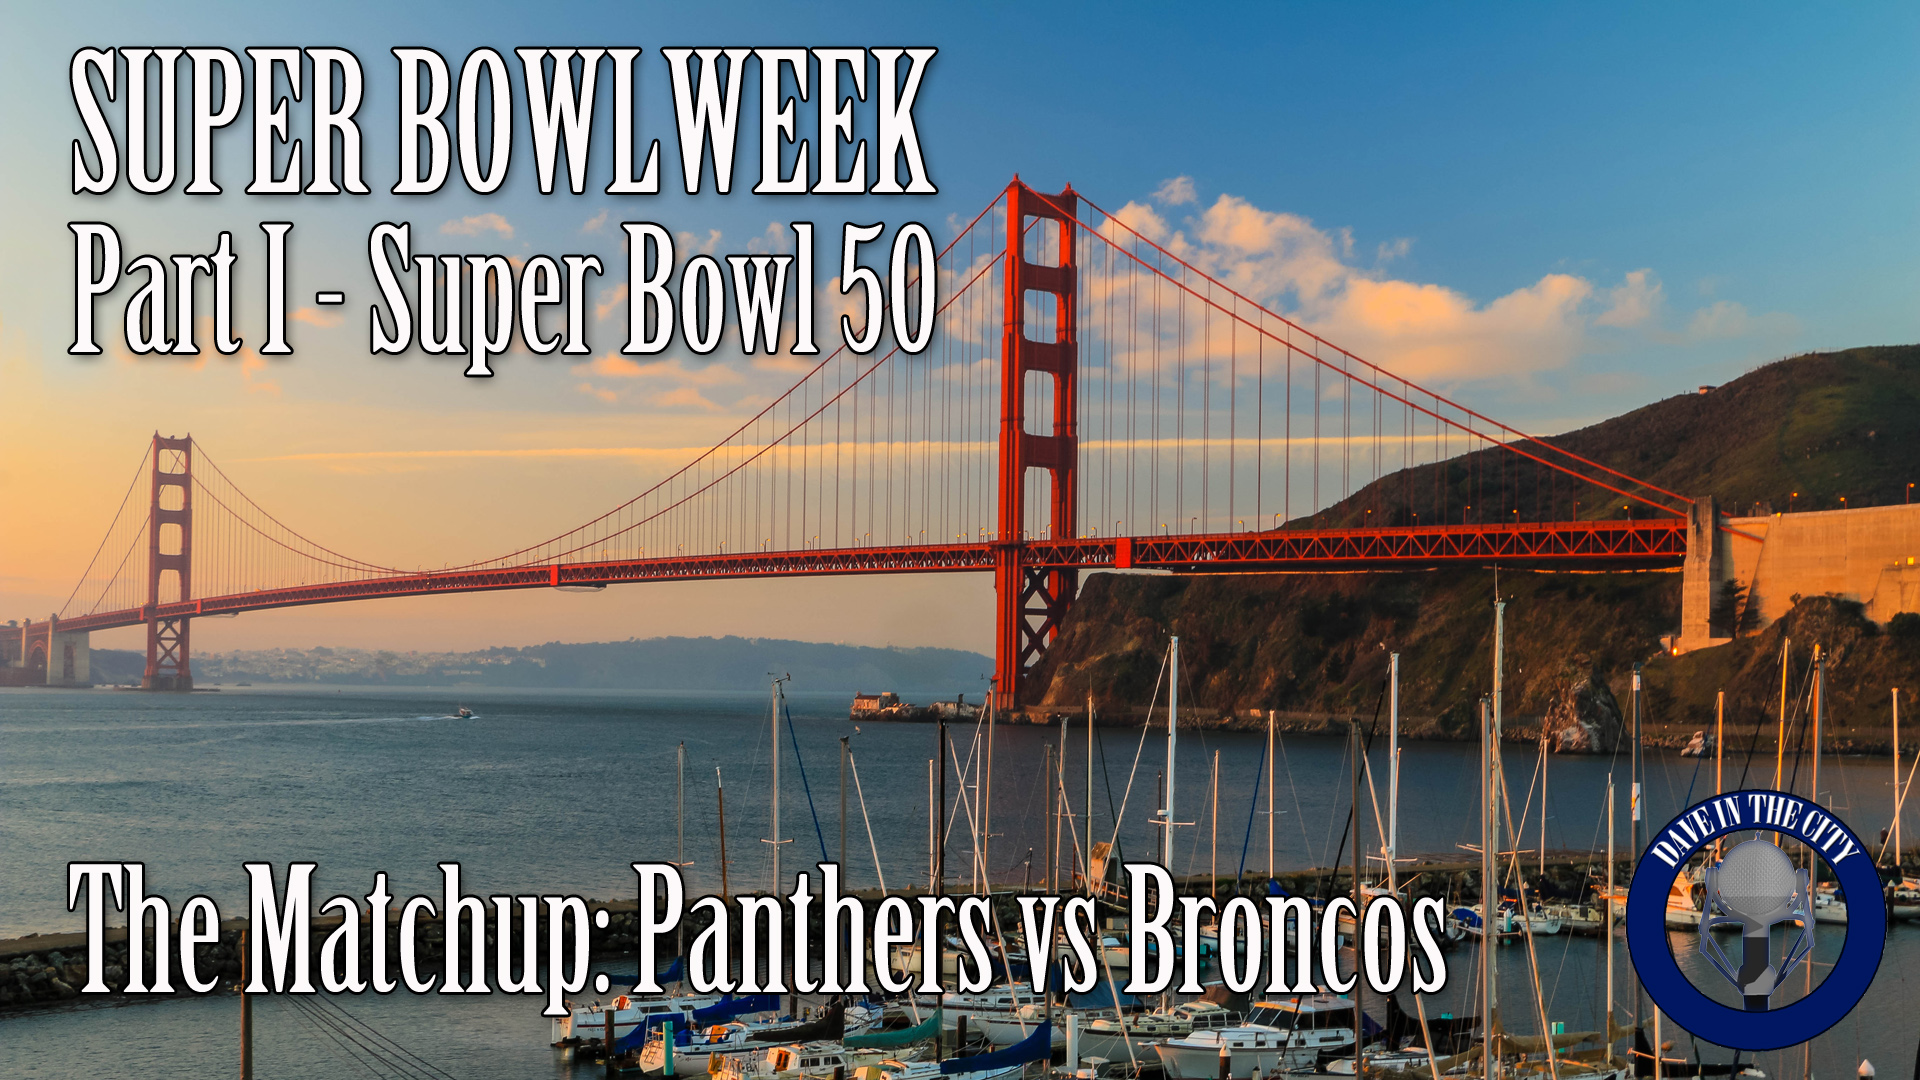 Podcast: Super Bowl Week Pt I: Panthers vs Broncos (02-01-16)